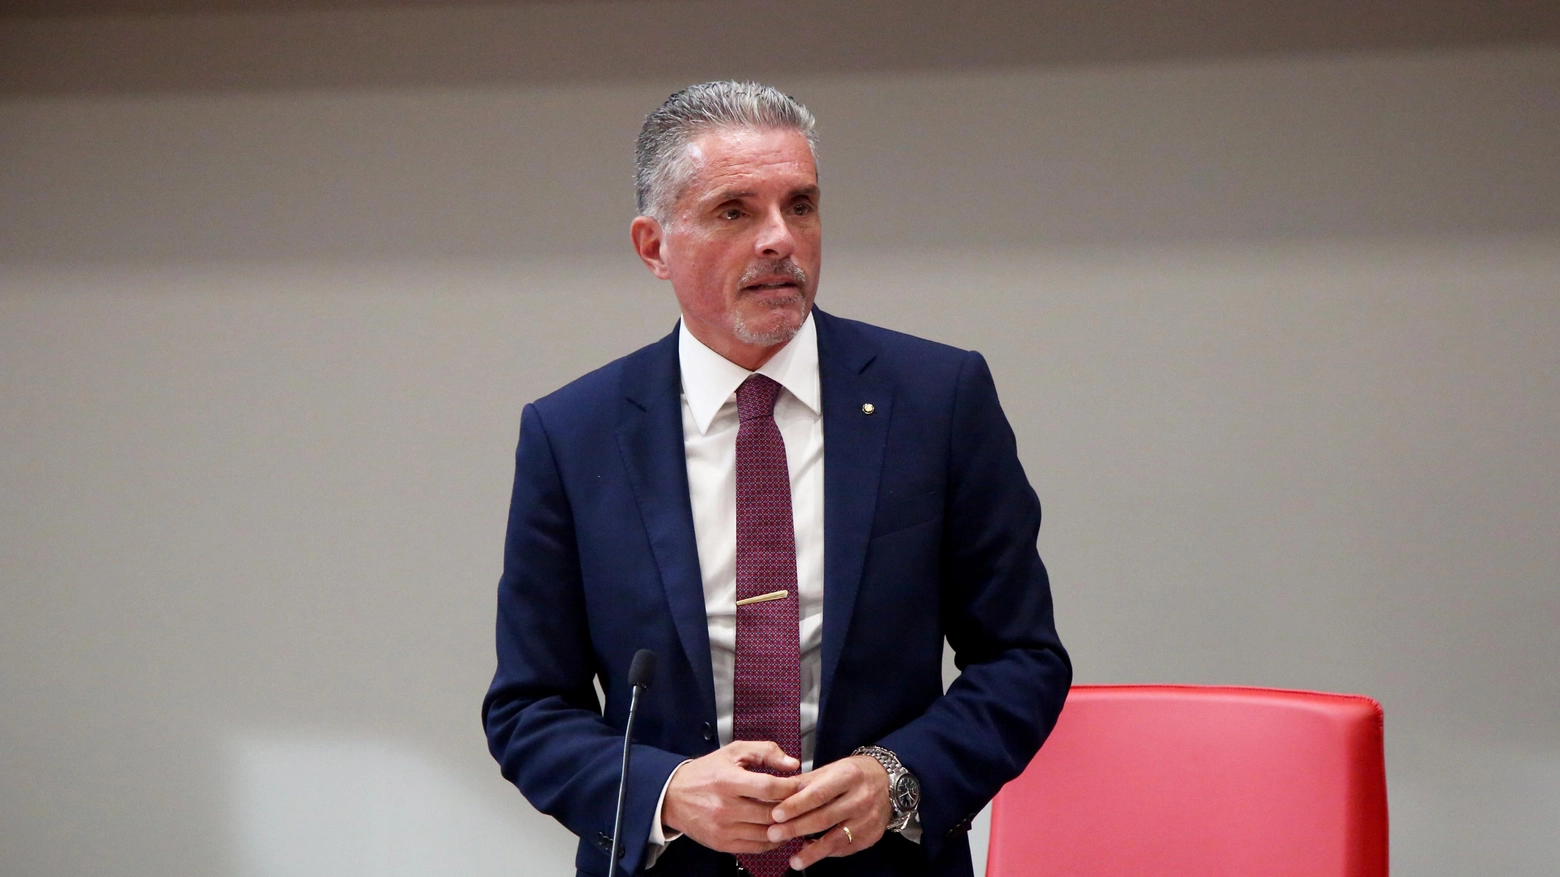 Paolo Lucchi, presidente di Legacoop Romagna: "Assunzioni difficoltose". Nel mirino anche le somme destinate alle imprese per garantire servizi pubblici.